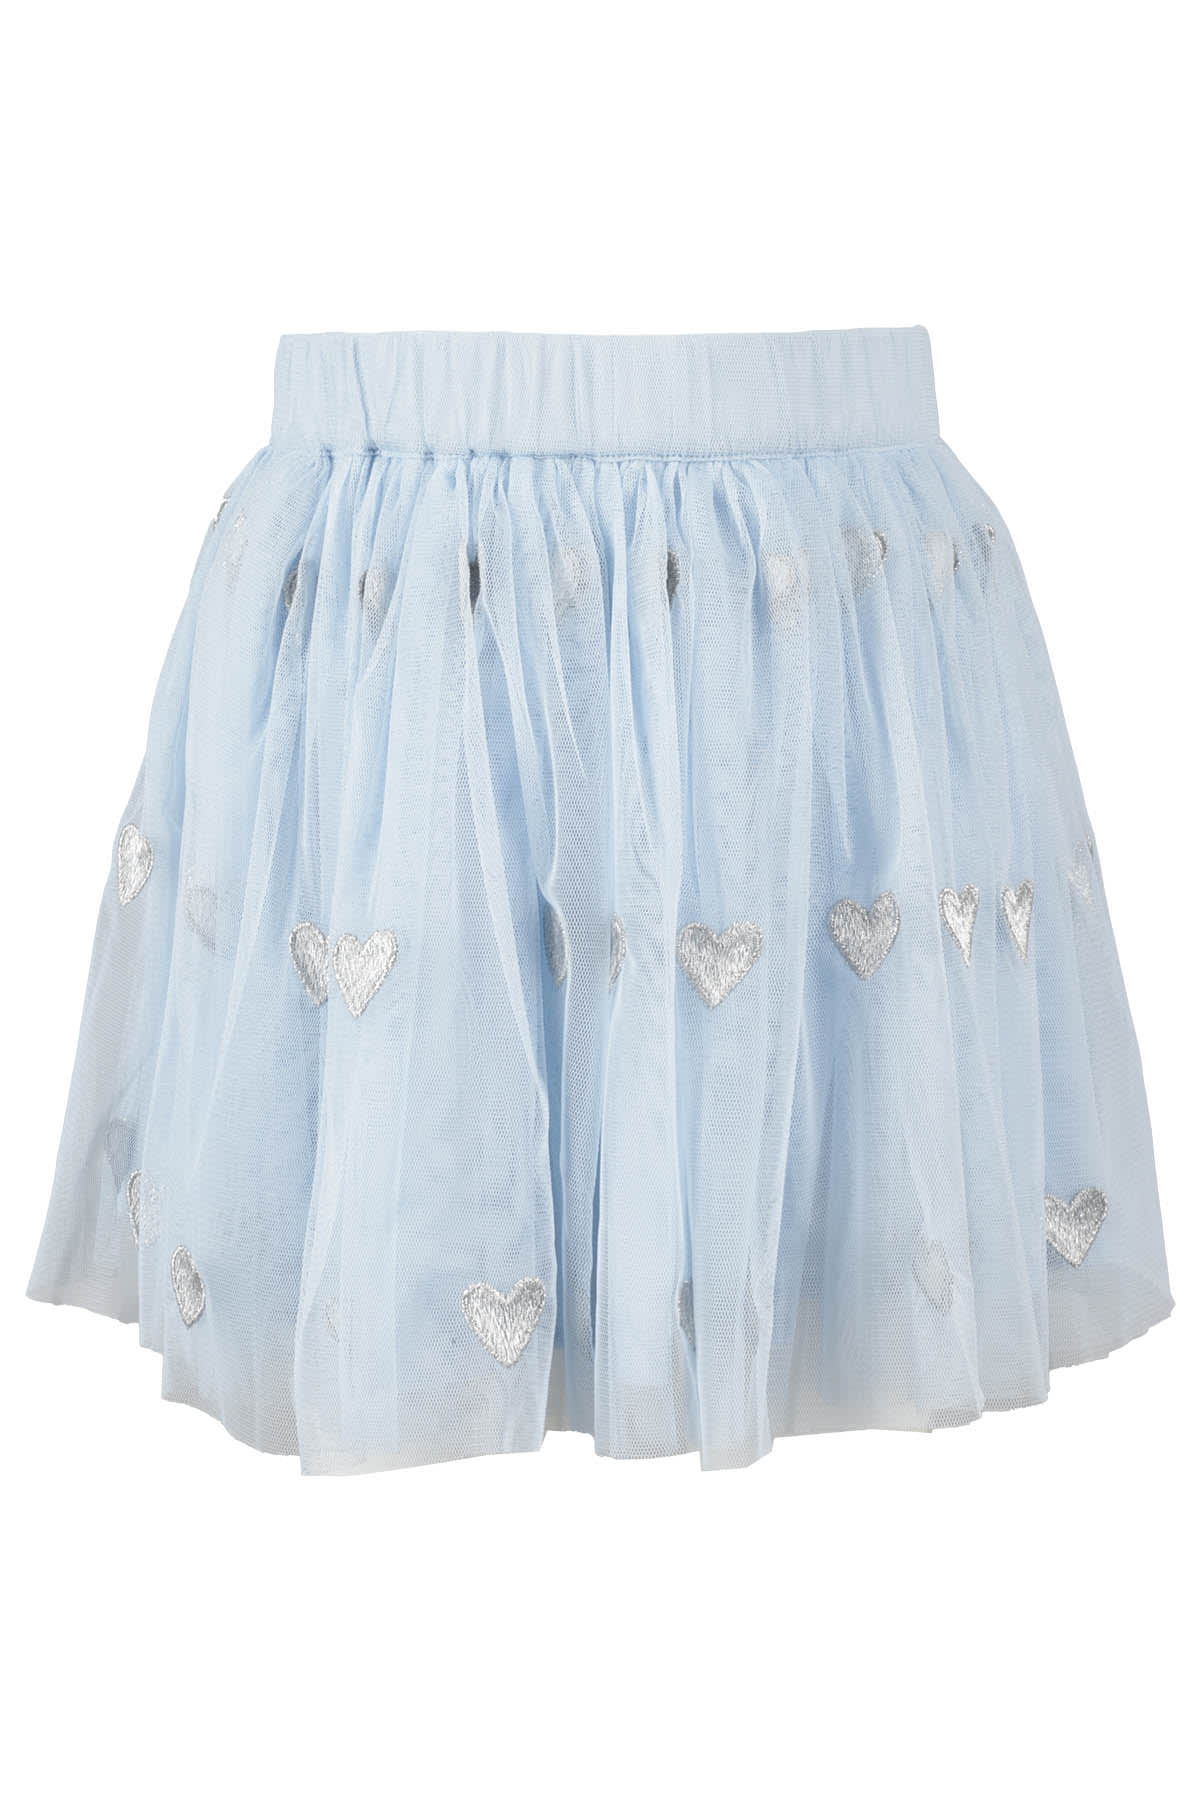 Stella Mccartney Kids' Skirt In Em Celeste